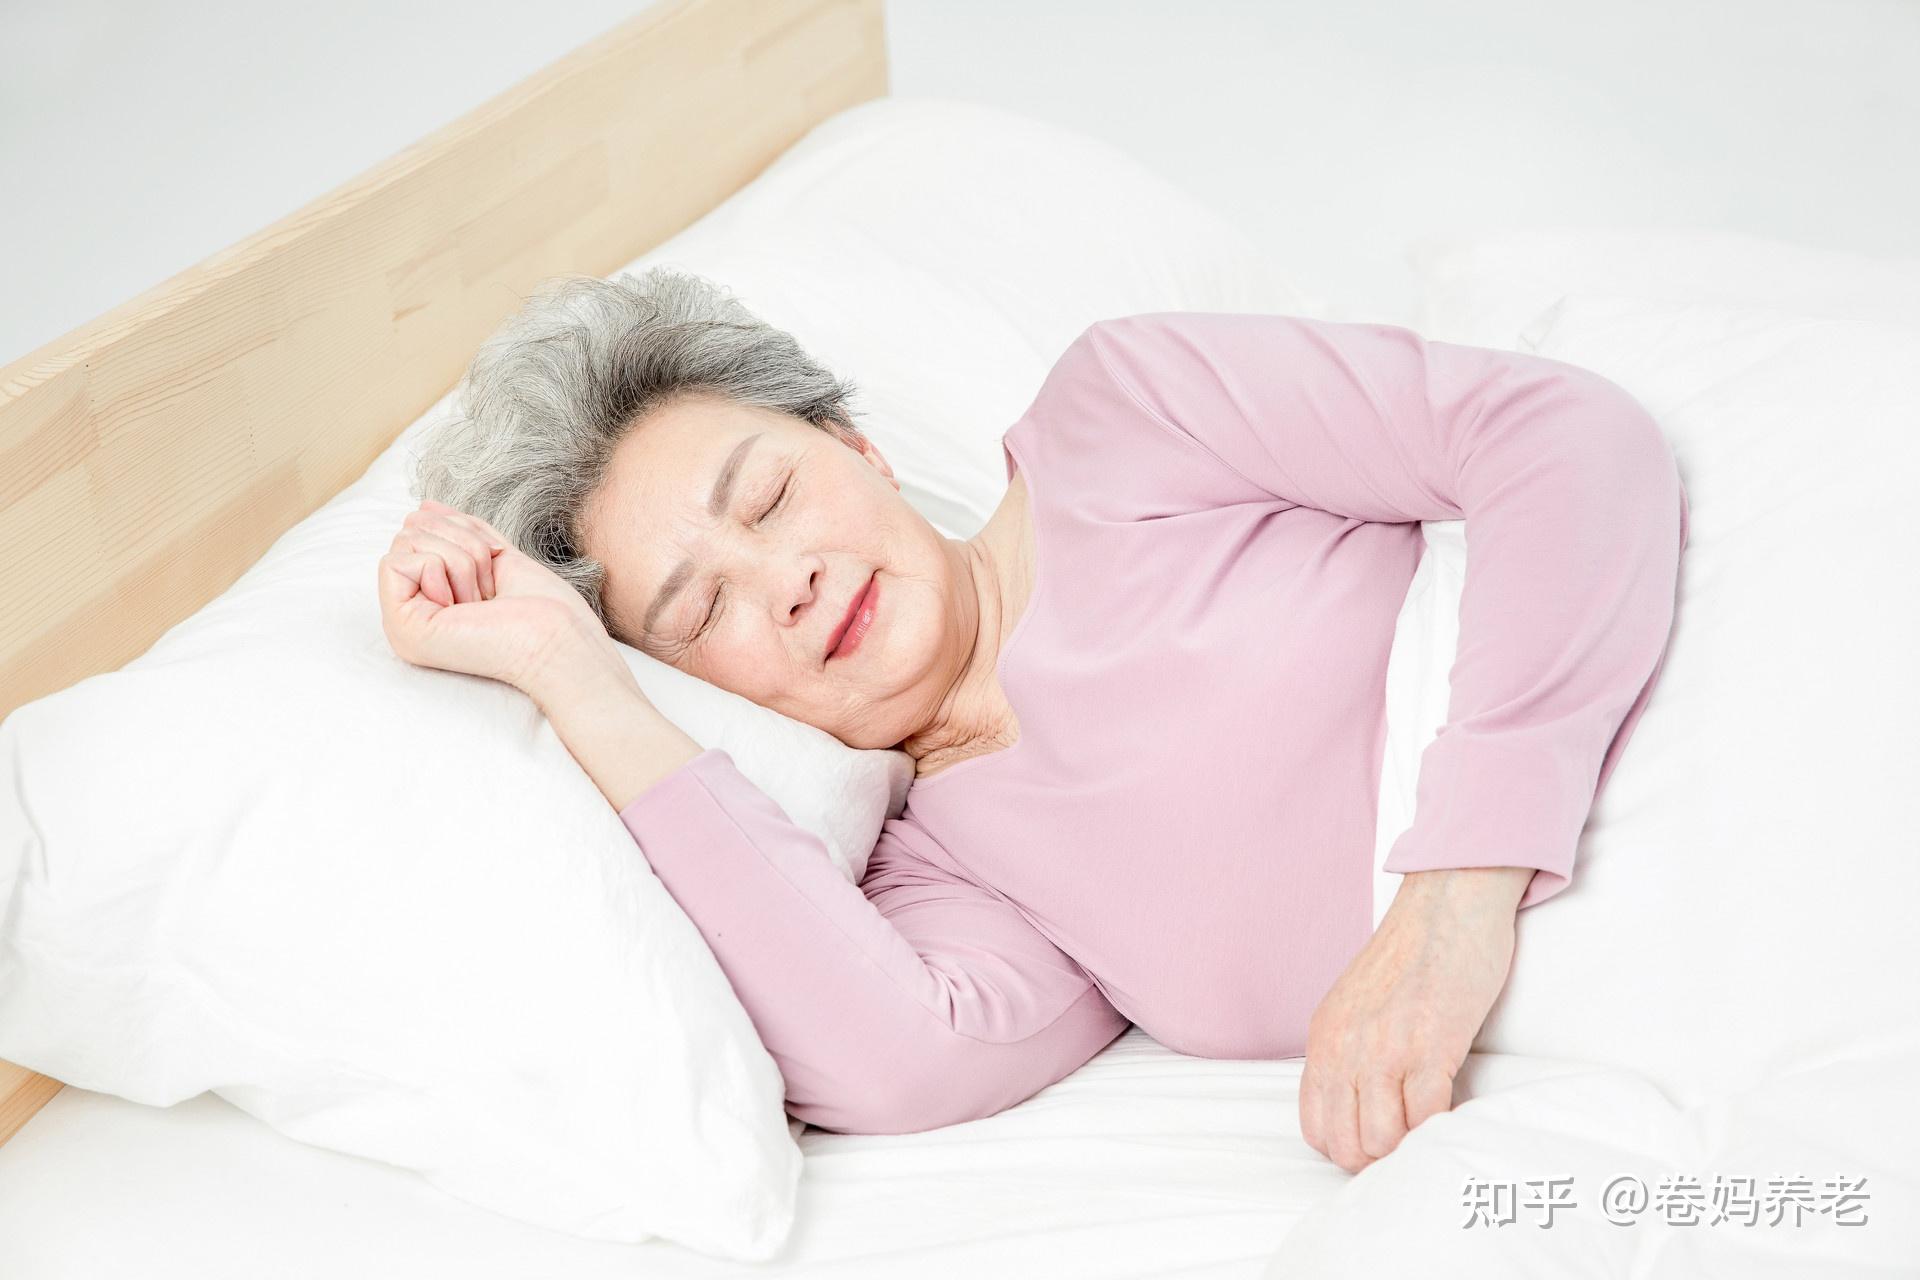 中年女性失眠頭痛坐在床上圖片素材-JPG圖片尺寸6720 × 4480px-高清圖案501318677-zh.lovepik.com